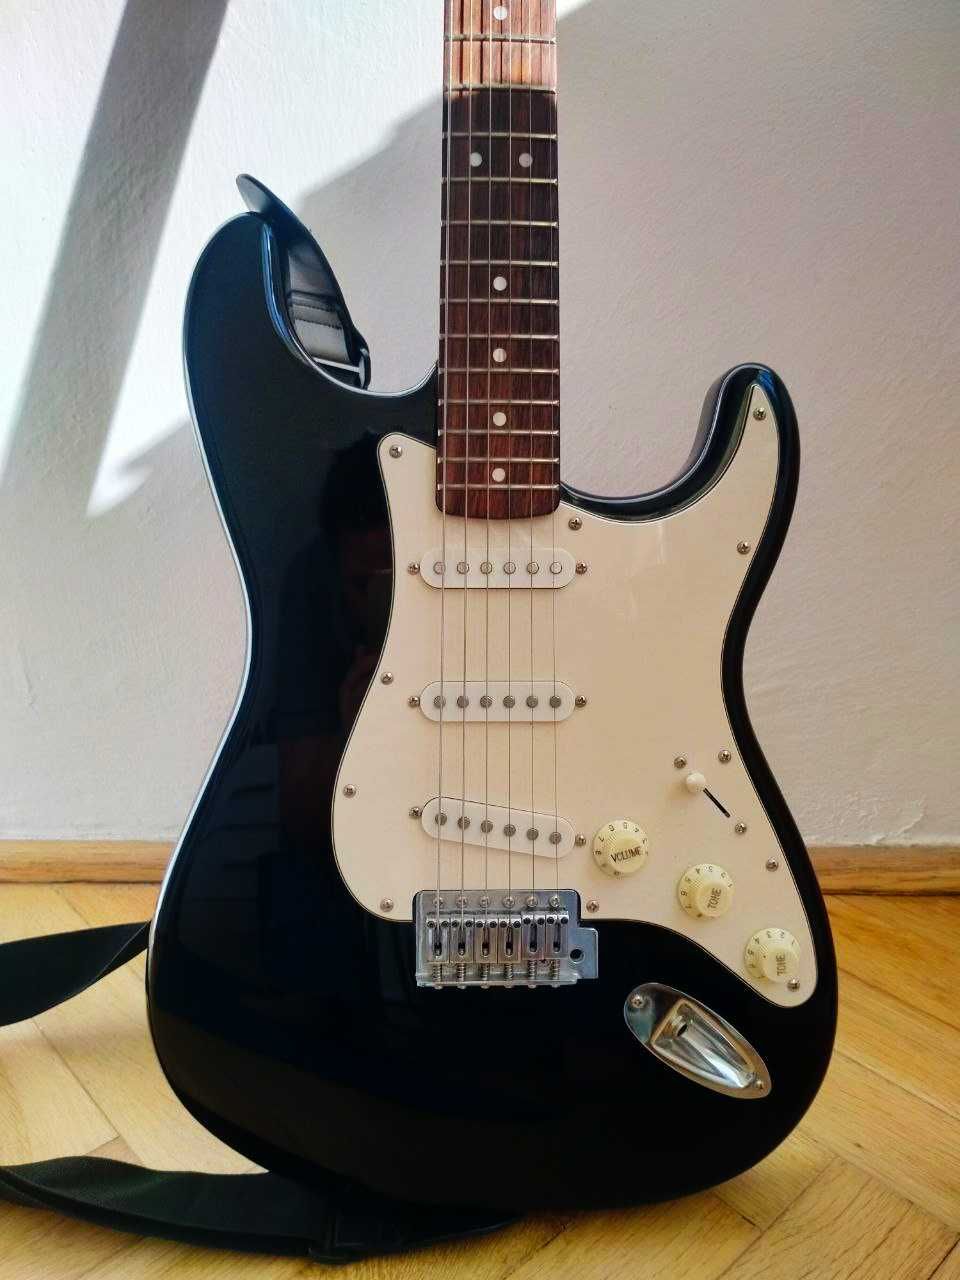 Gitara elektryczna Squier by Fender typ Stratocaster + pokrowiec